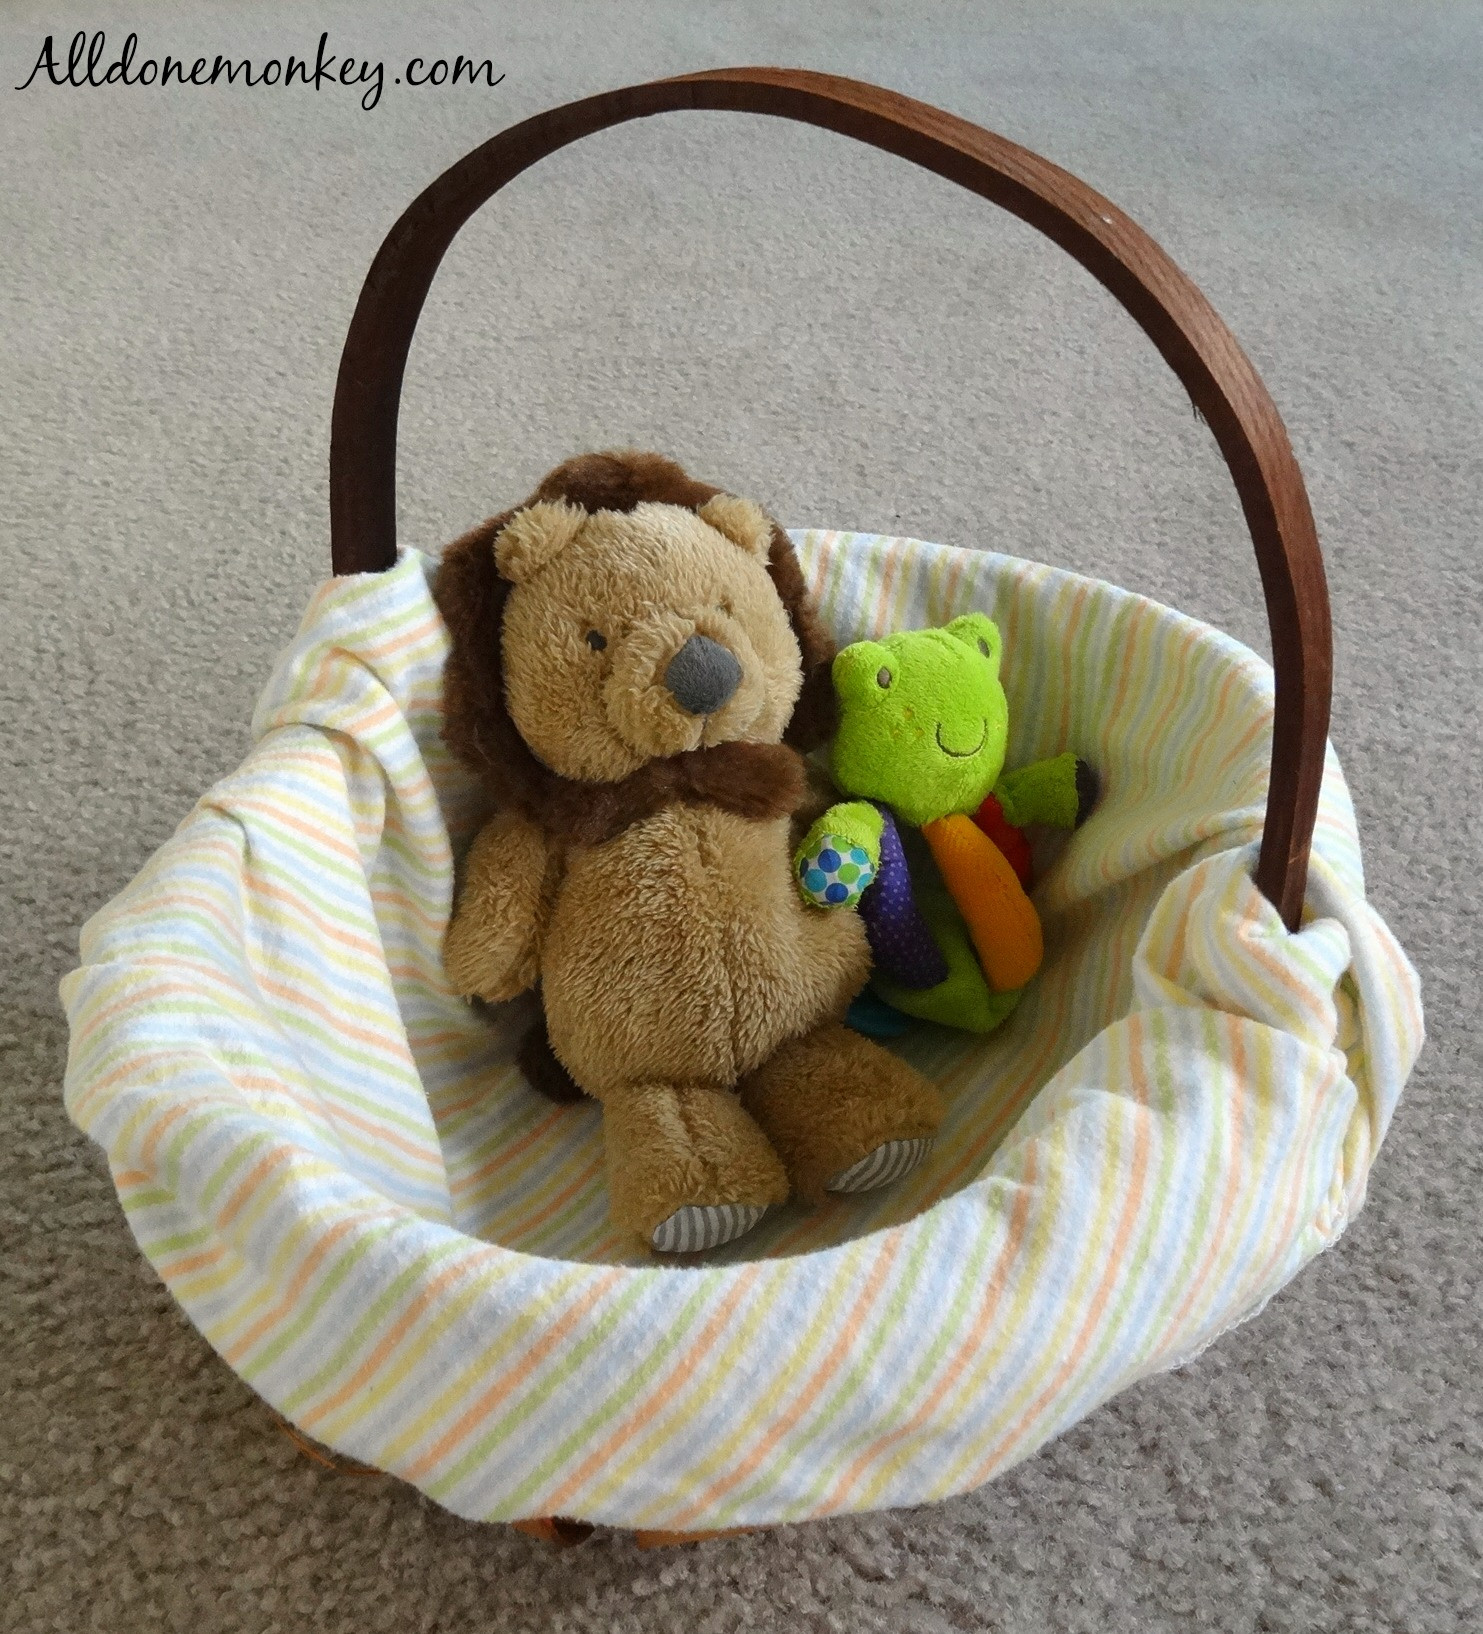 DIY Easter Basket For Toddler
 DIY Easter Basket for Baby All Done Monkey